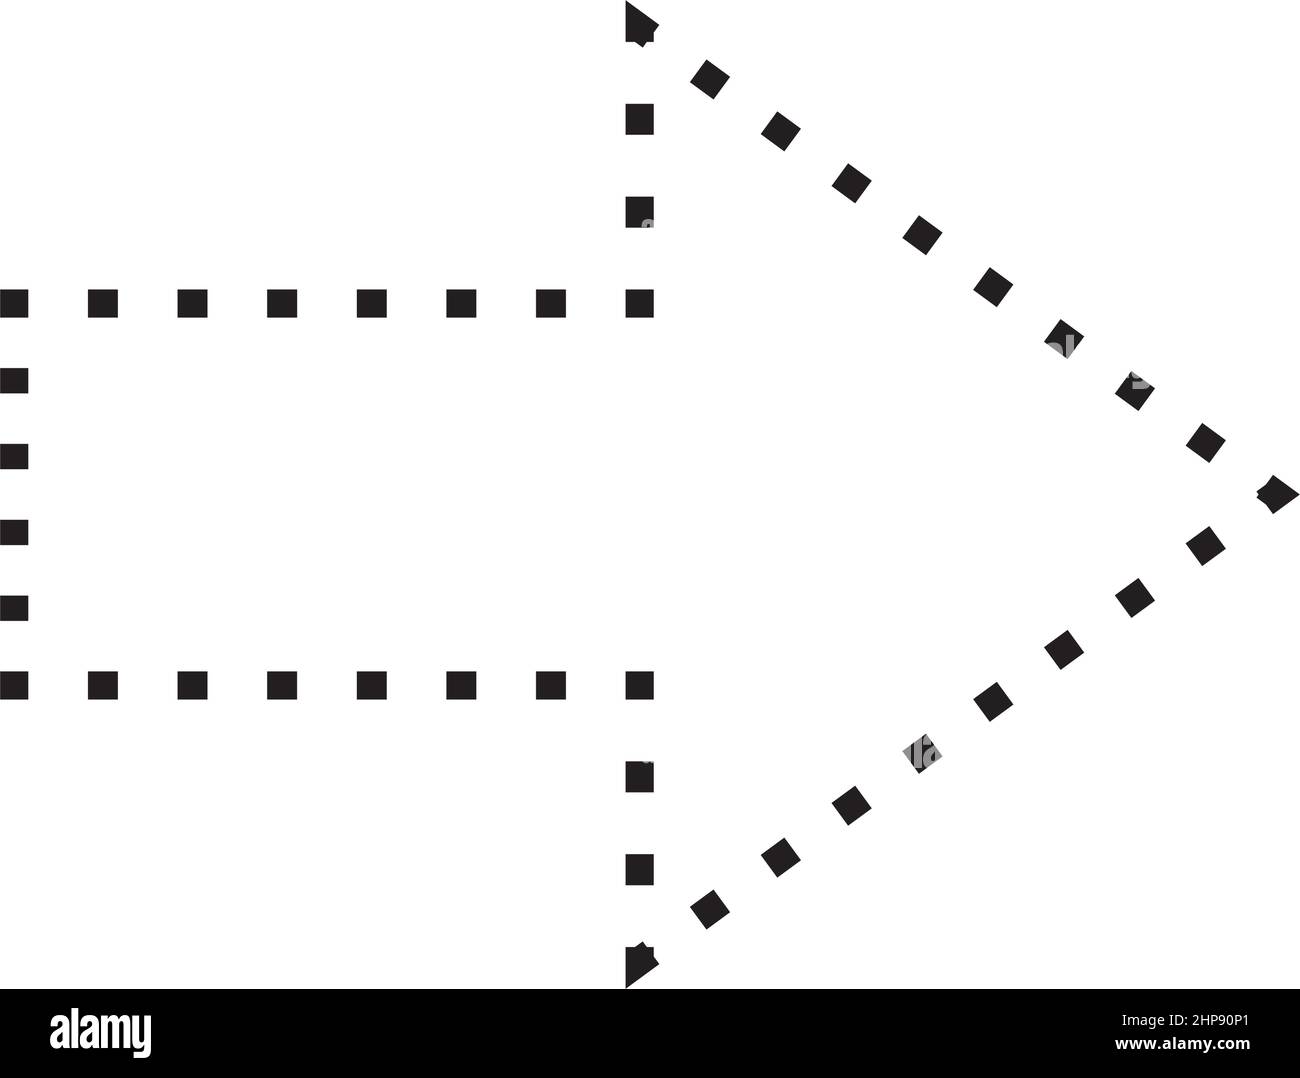 Pfeilsymbol gestrichelte Form Vektor-Symbol für kreatives Grafikdesign ui-Element in einer Piktogramm-Illustration Stock Vektor